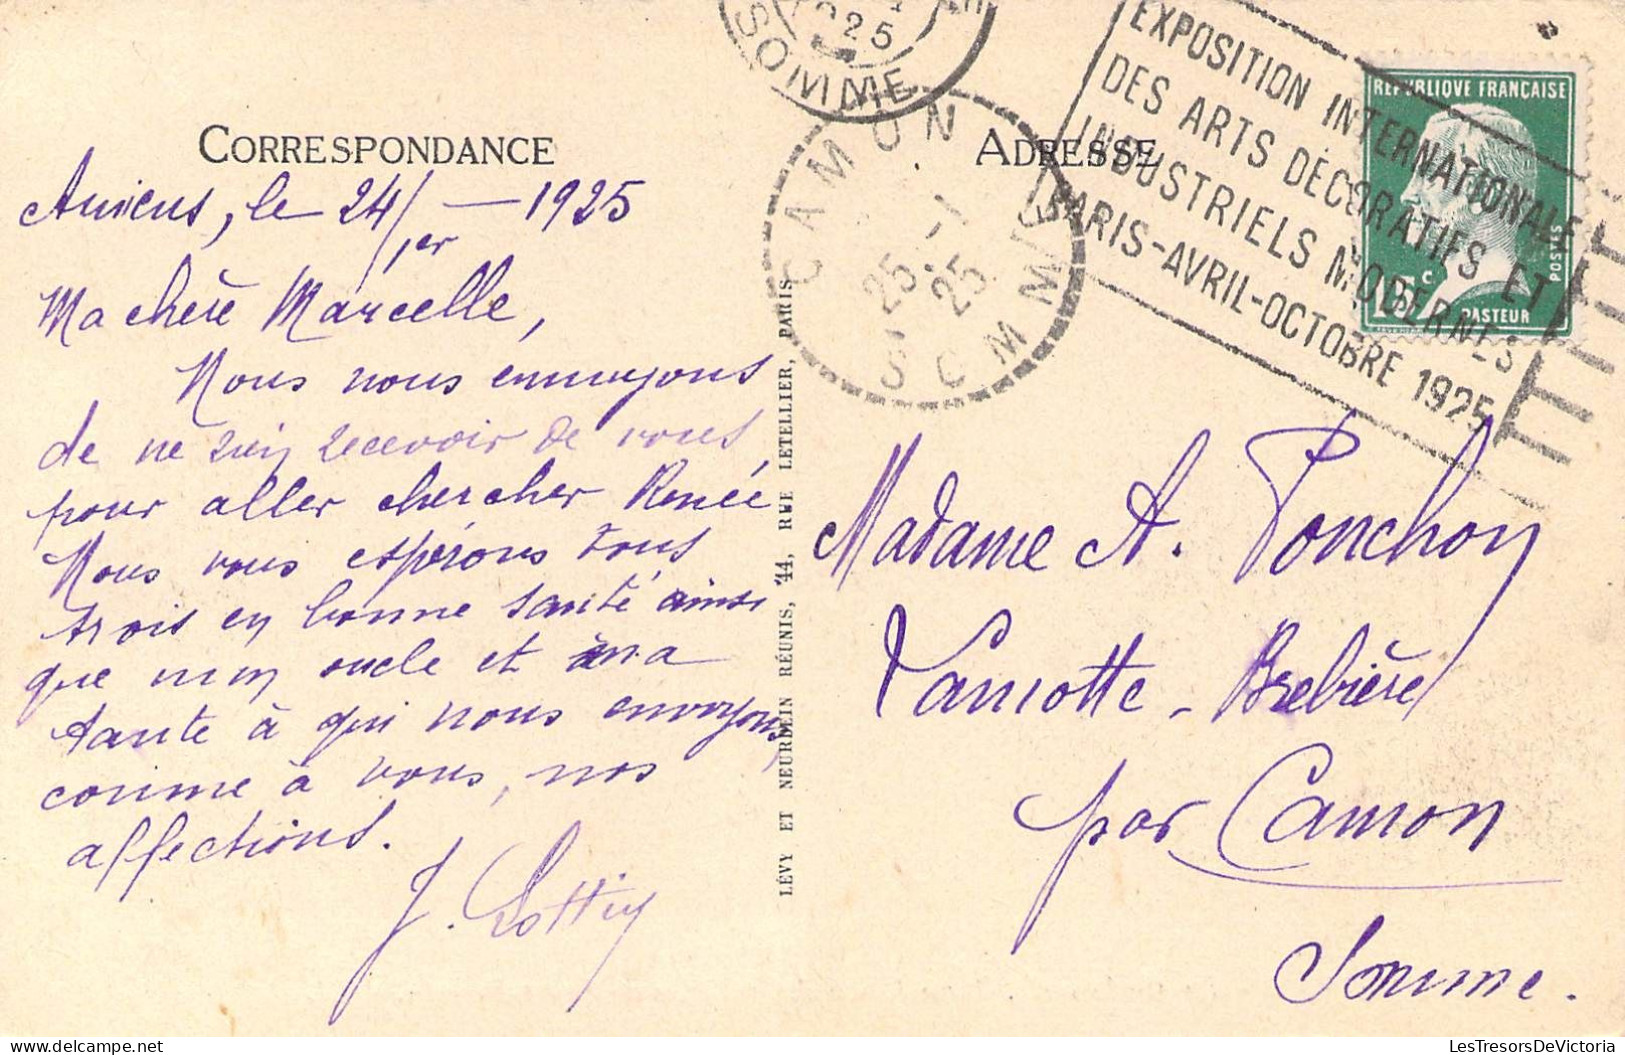 FRANCE - 80 - AMIENS - La Cathédrale Translation Des Reliques De Saint Firmin - LL - Carte Postale Ancienne - Amiens